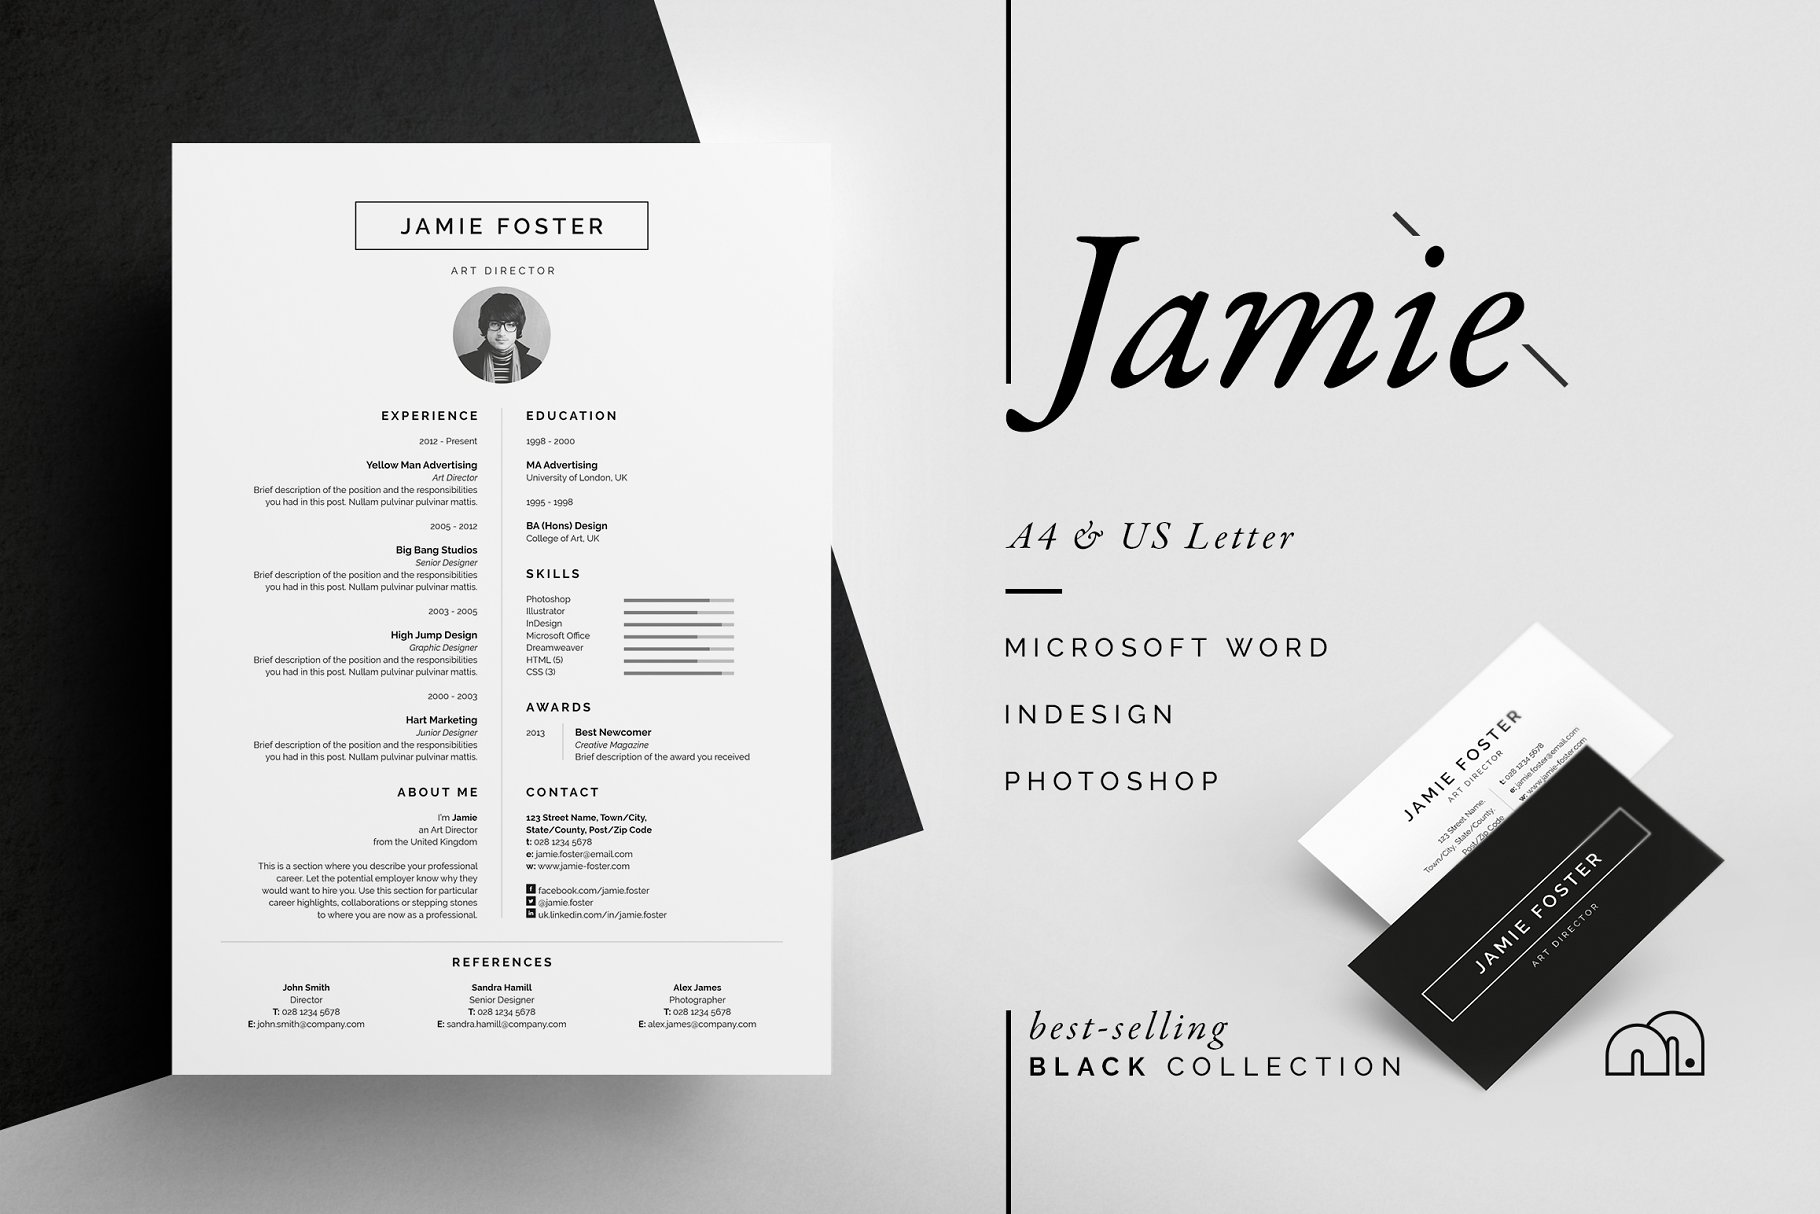 简约对称简历设计模板 Jamie – Resume/CV插图